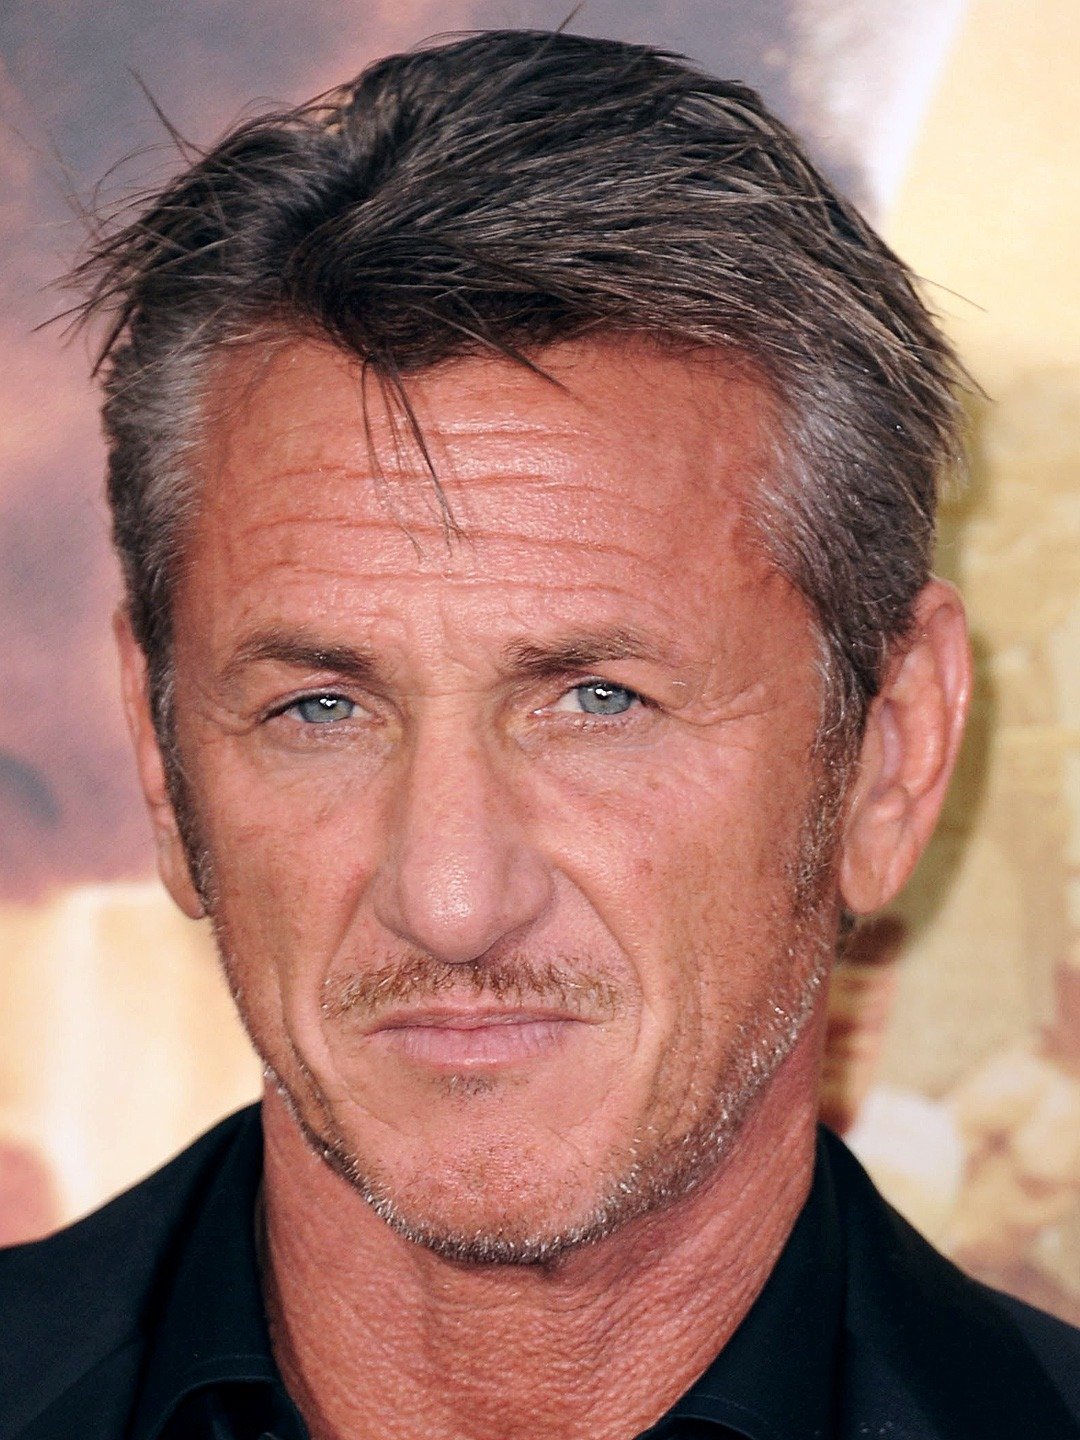 How tall is Sean Penn?